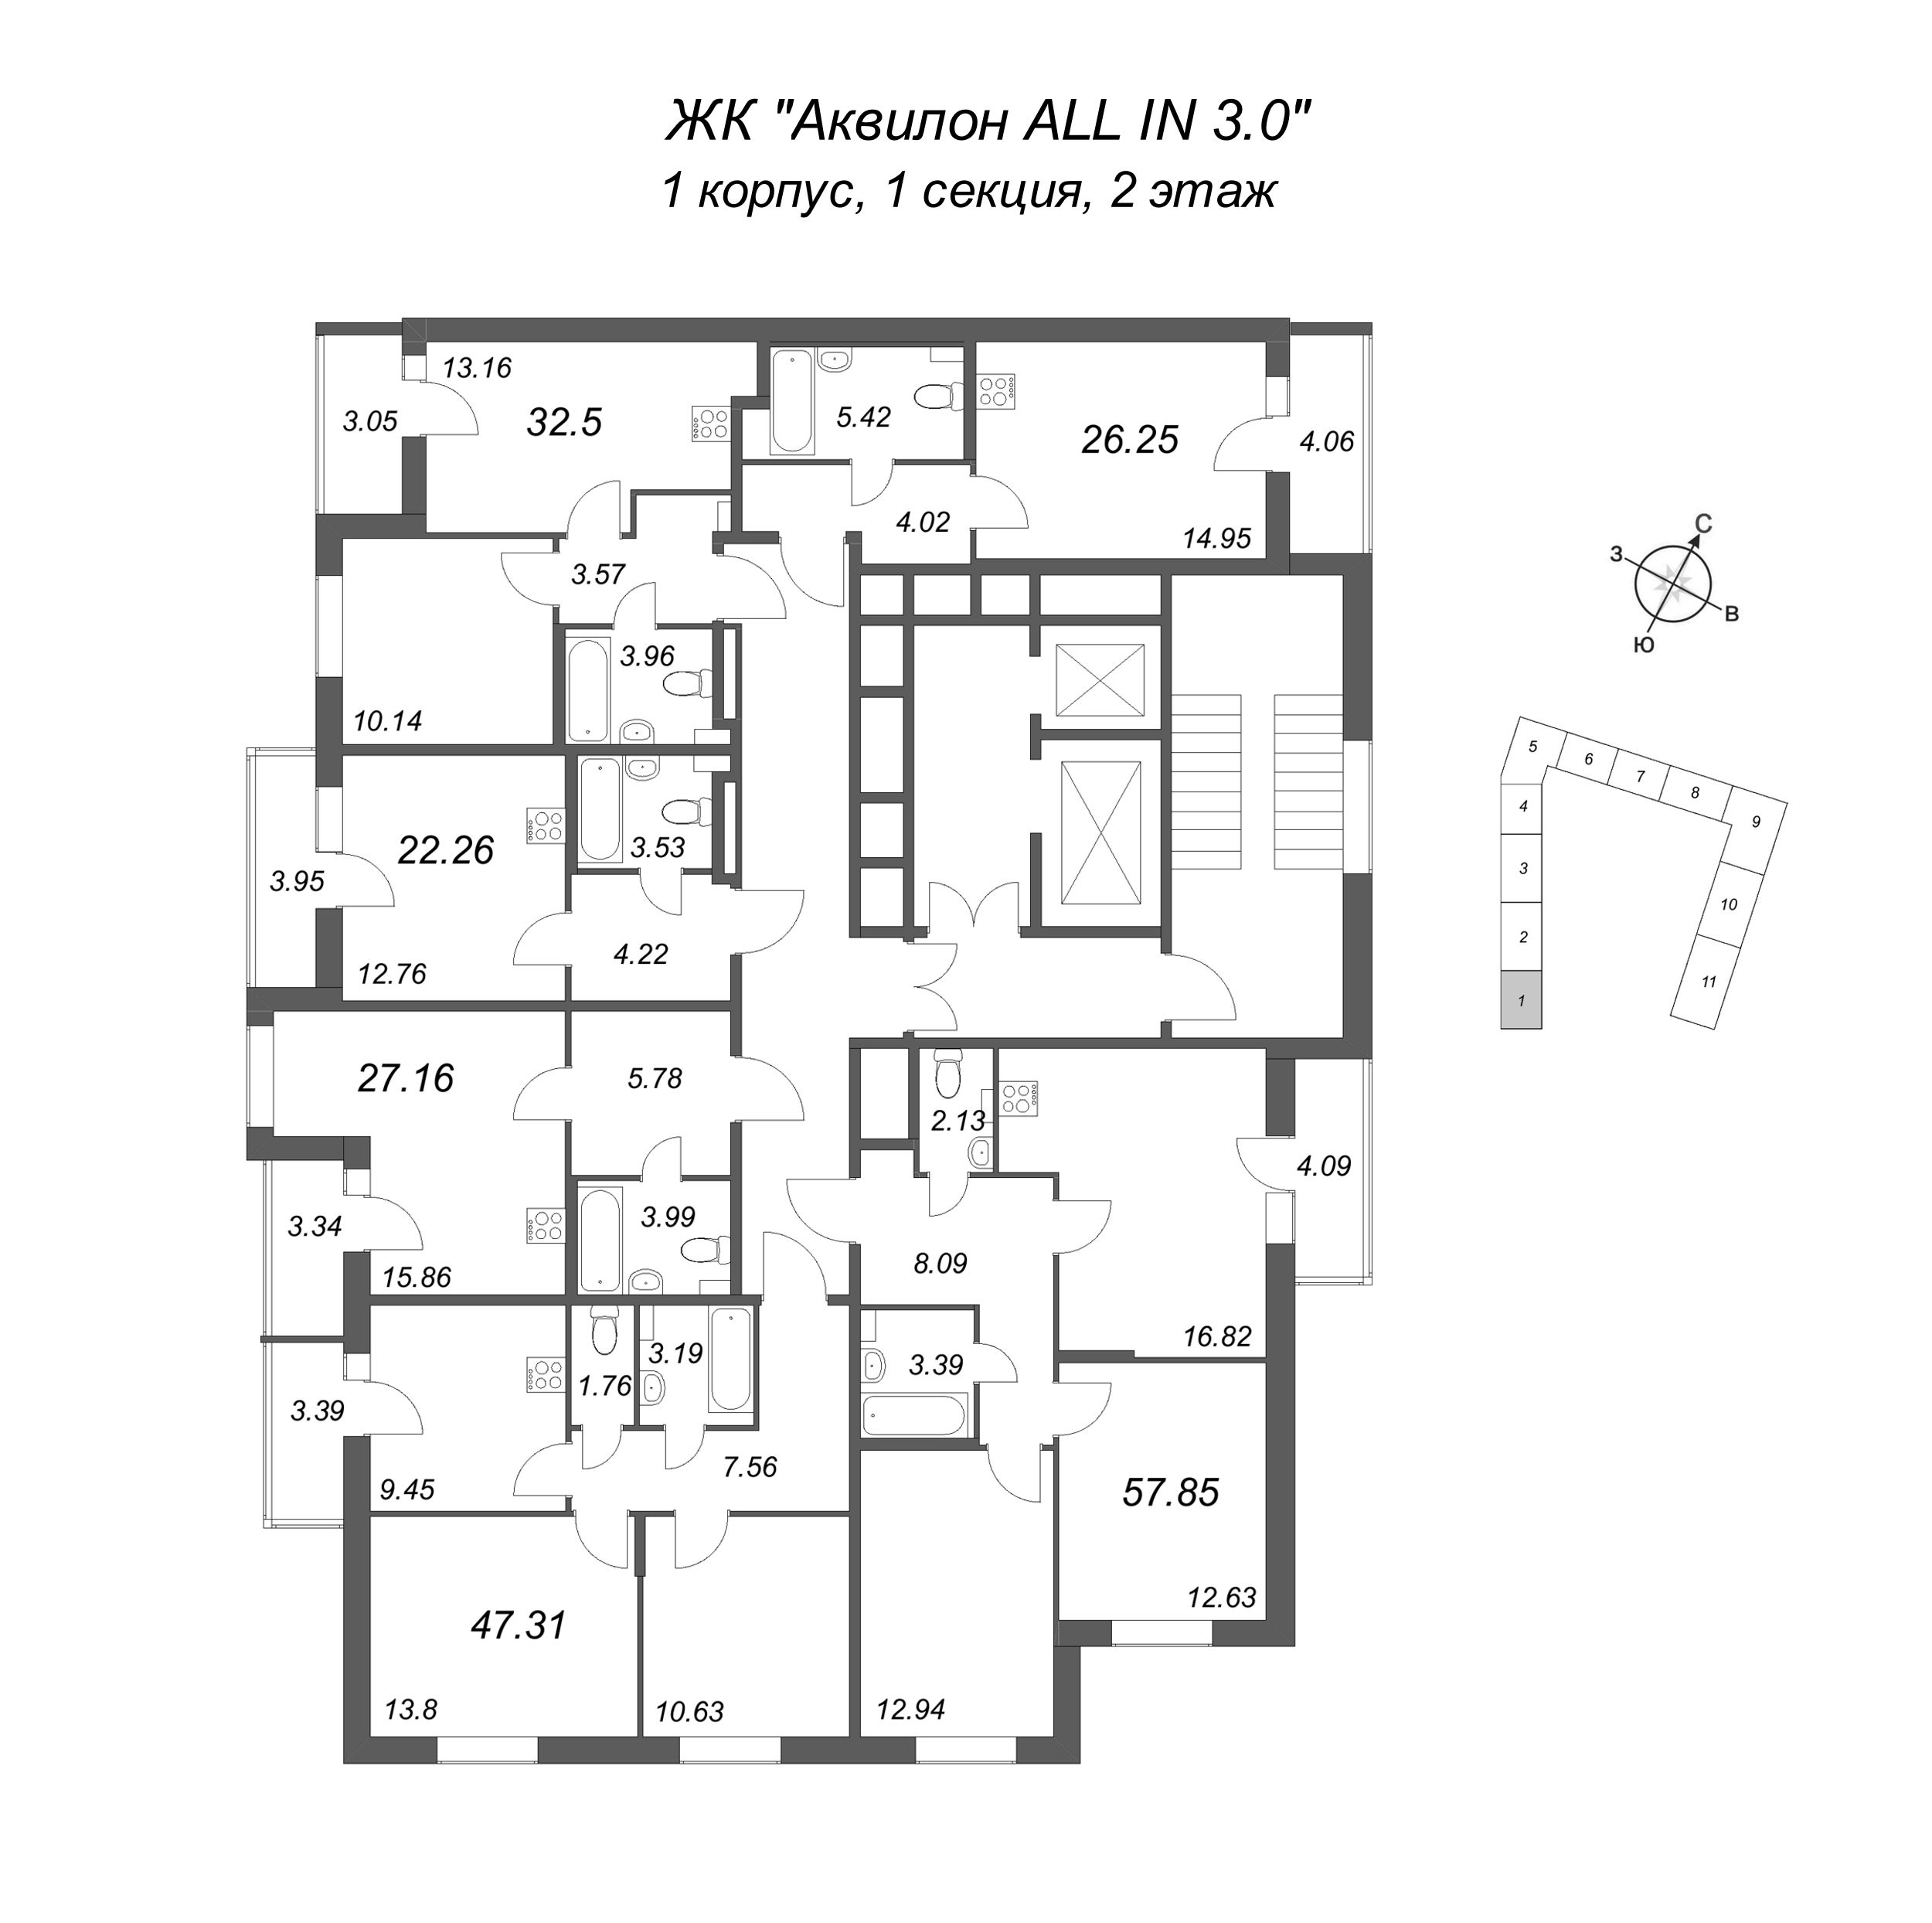 2-комнатная квартира, 47.31 м² в ЖК "Аквилон All in 3.0" - планировка этажа